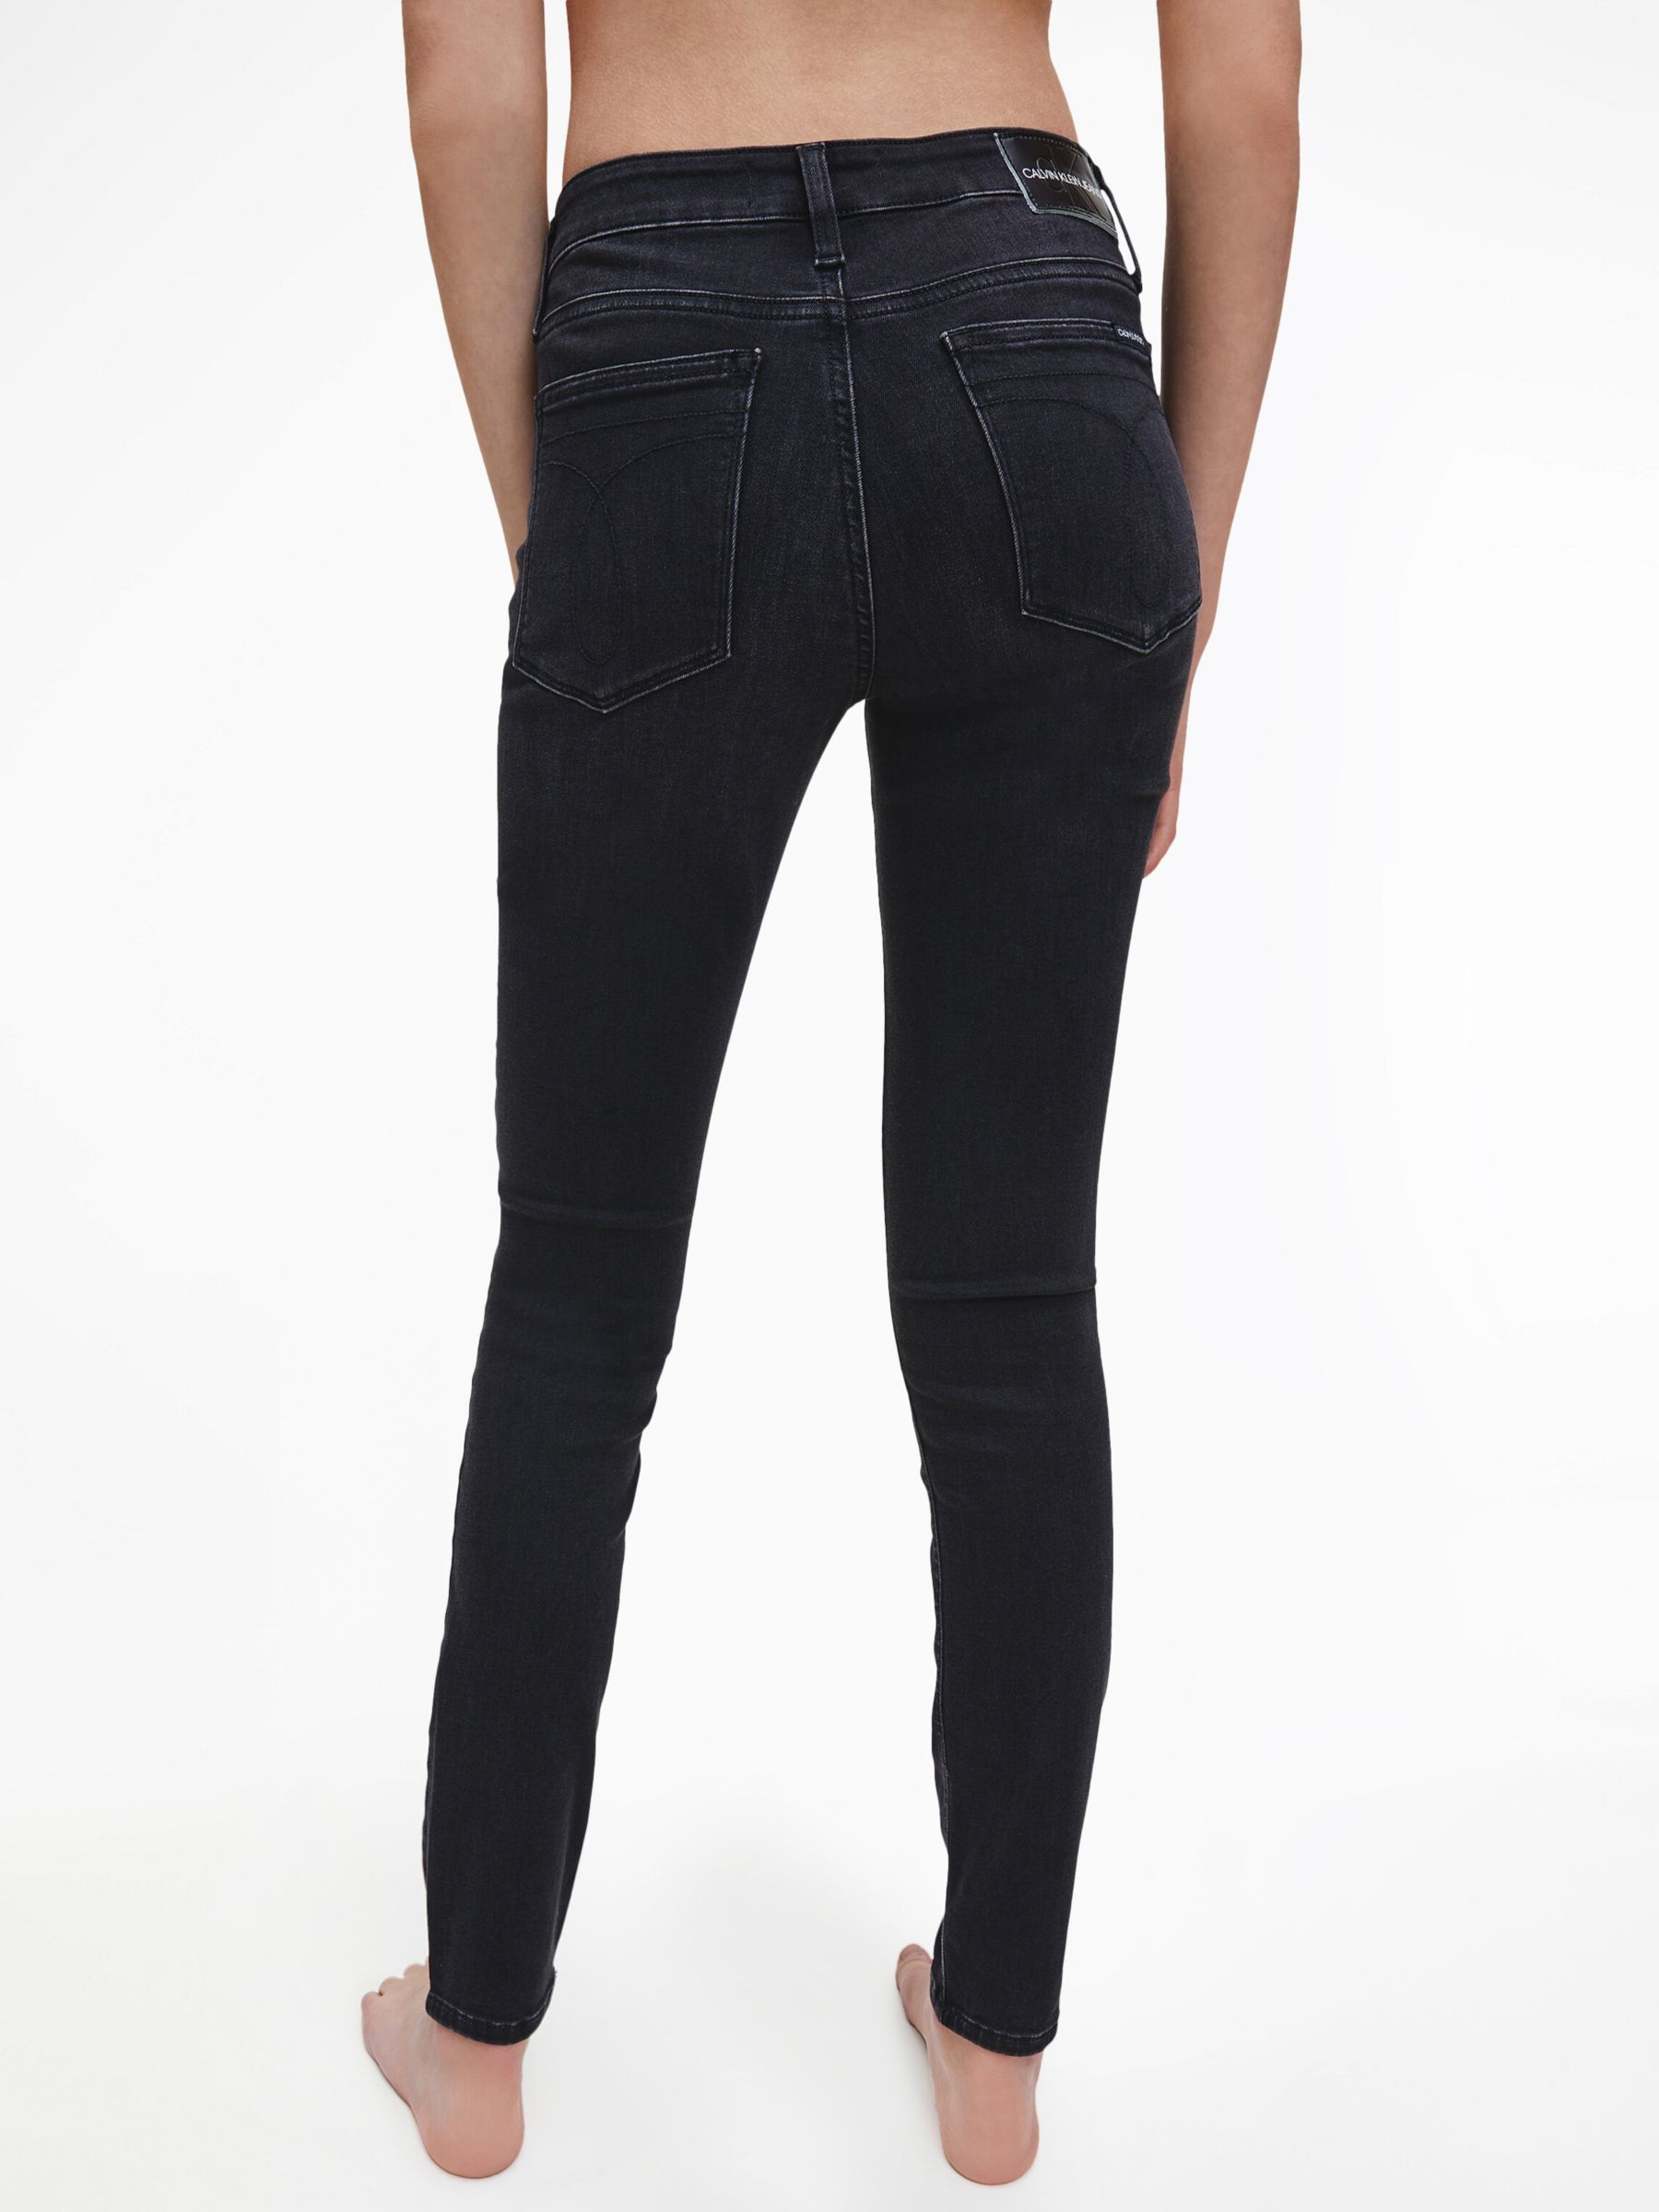 calvin klein black skinny jeans